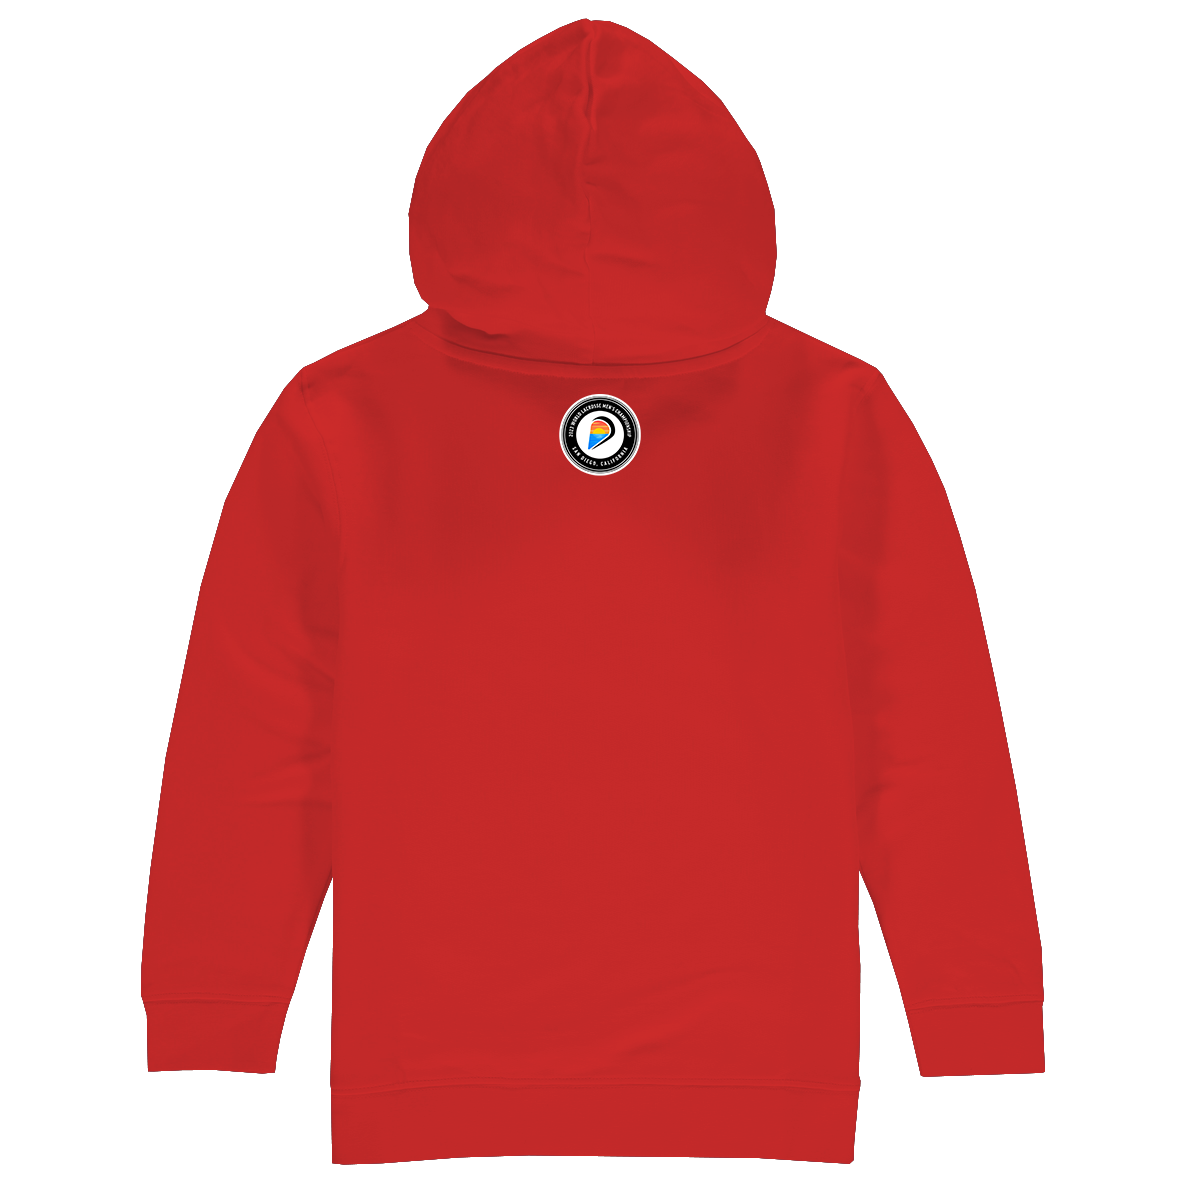 Germany Premium Unisex Hoodie Sweatshirt Red